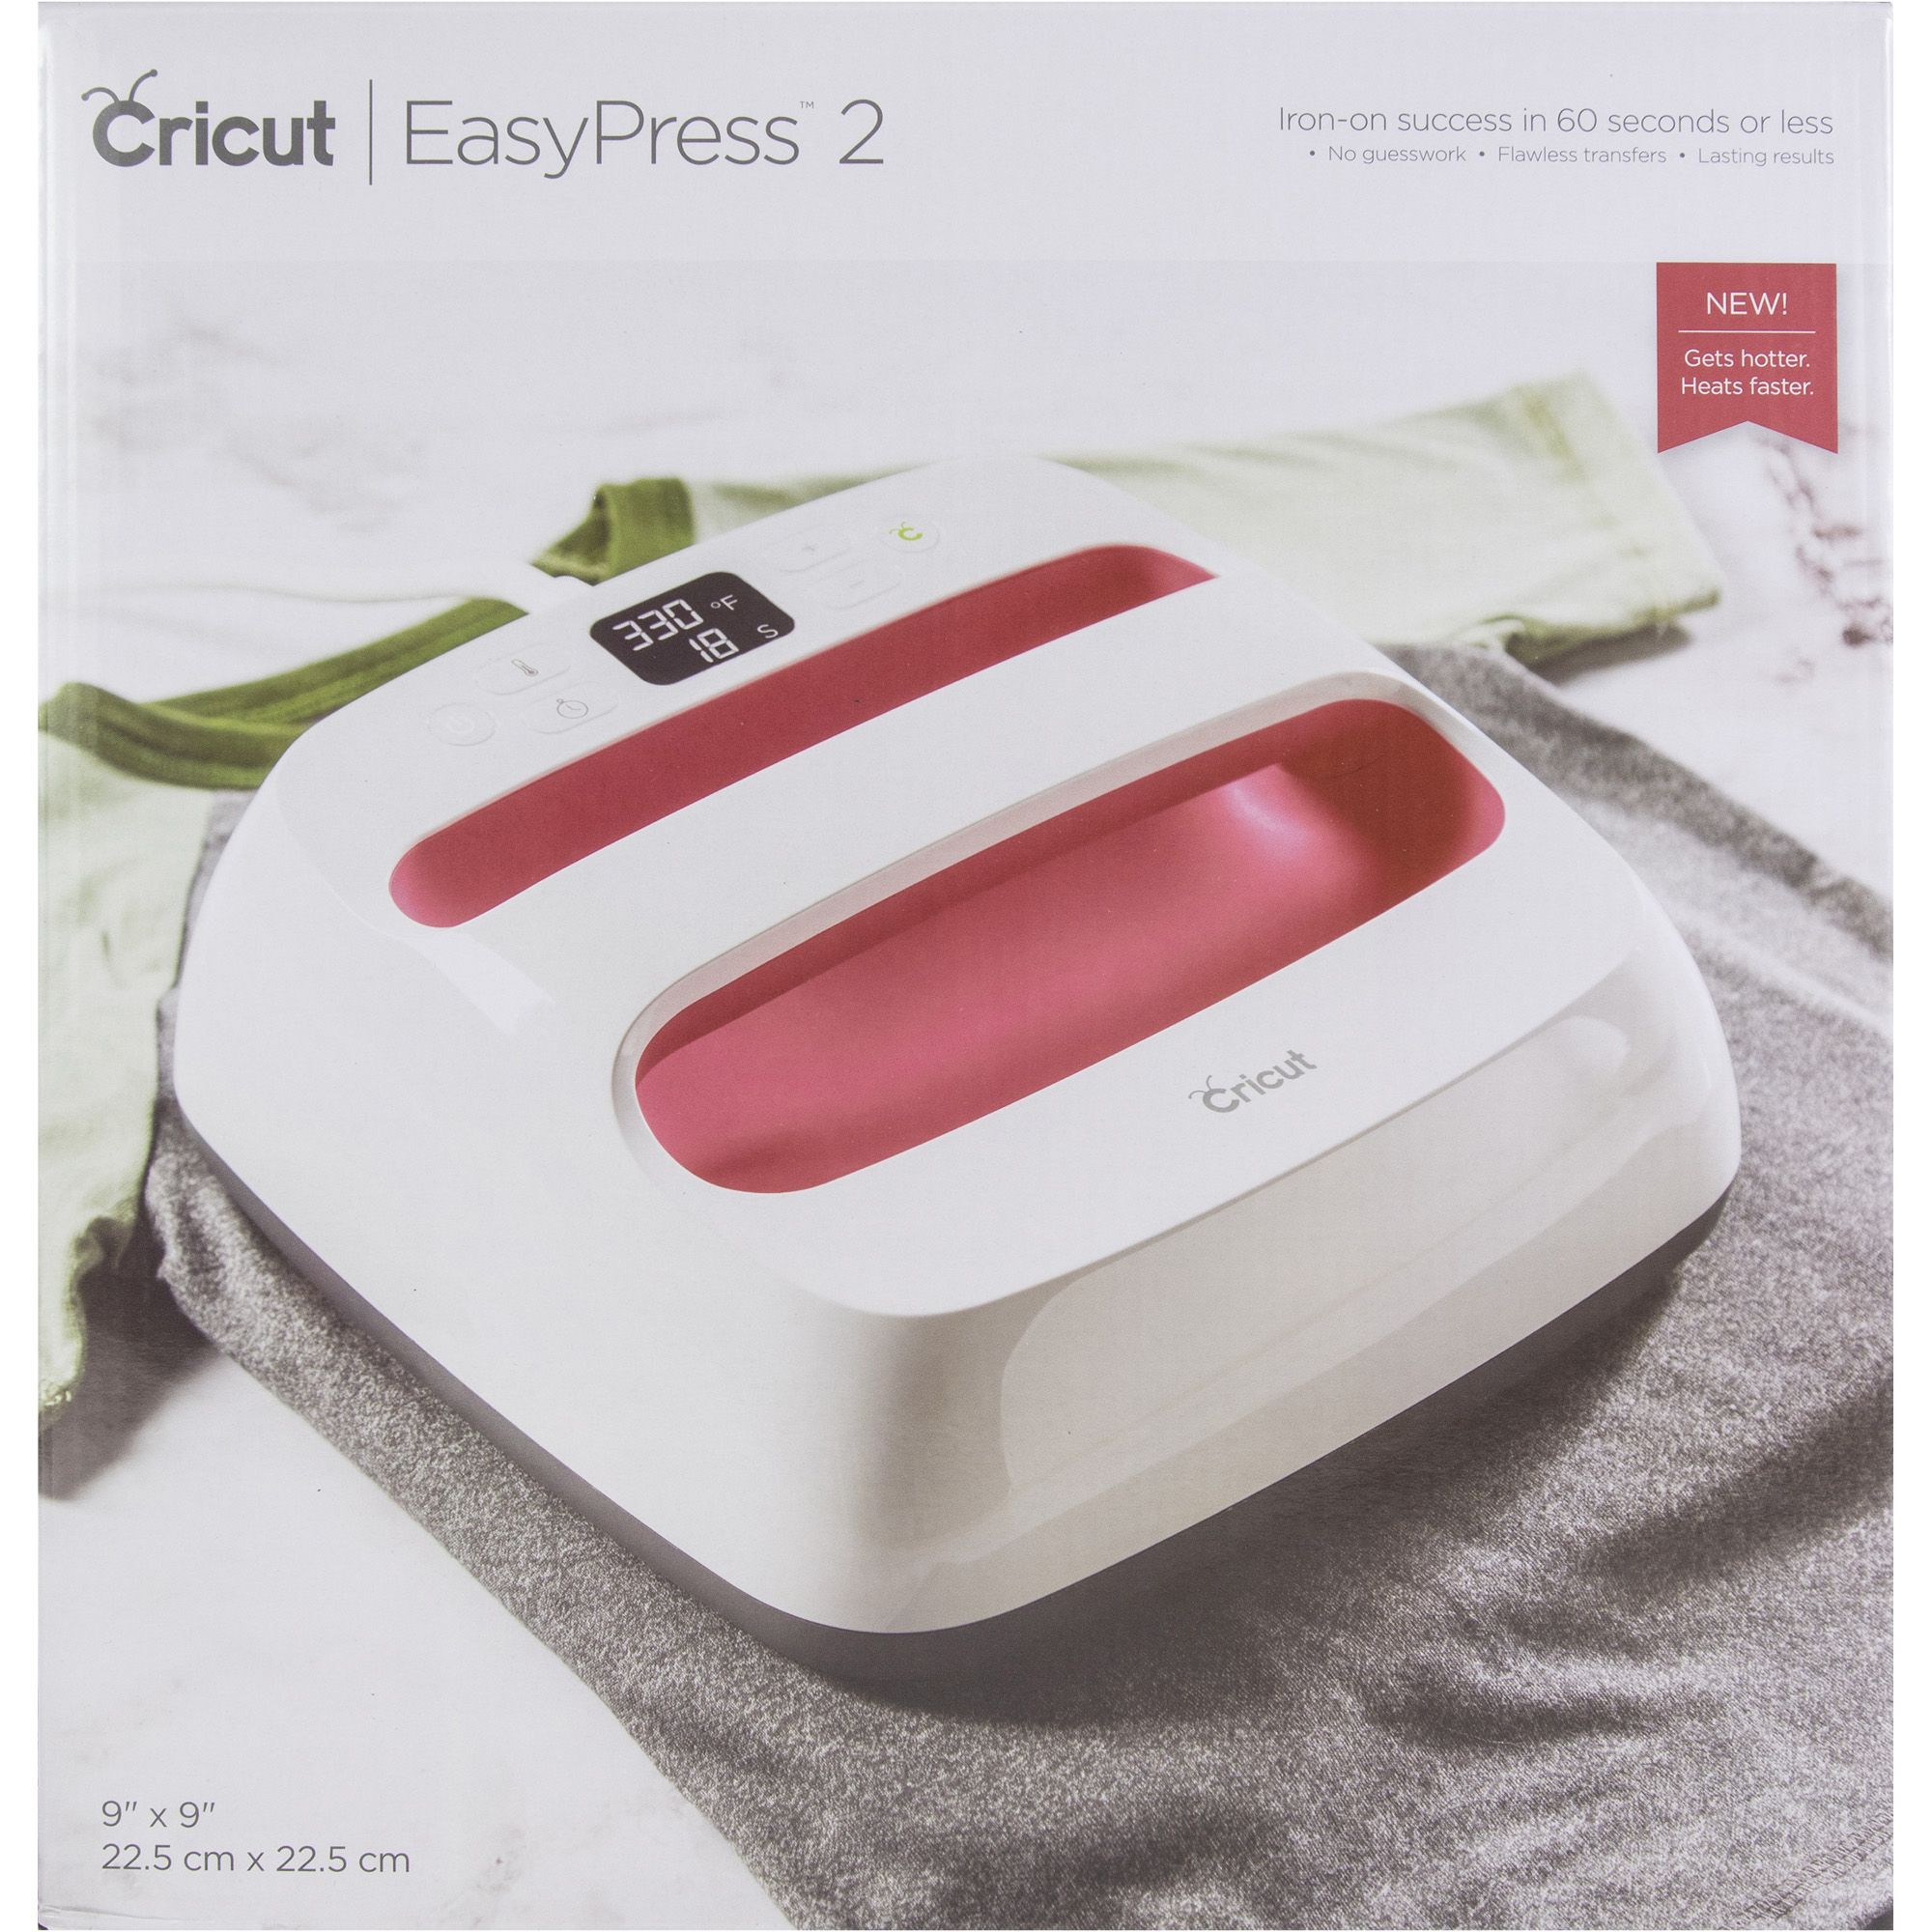 Fingerhut - Cricut EasyPress 2 9 x 9 - Raspberry